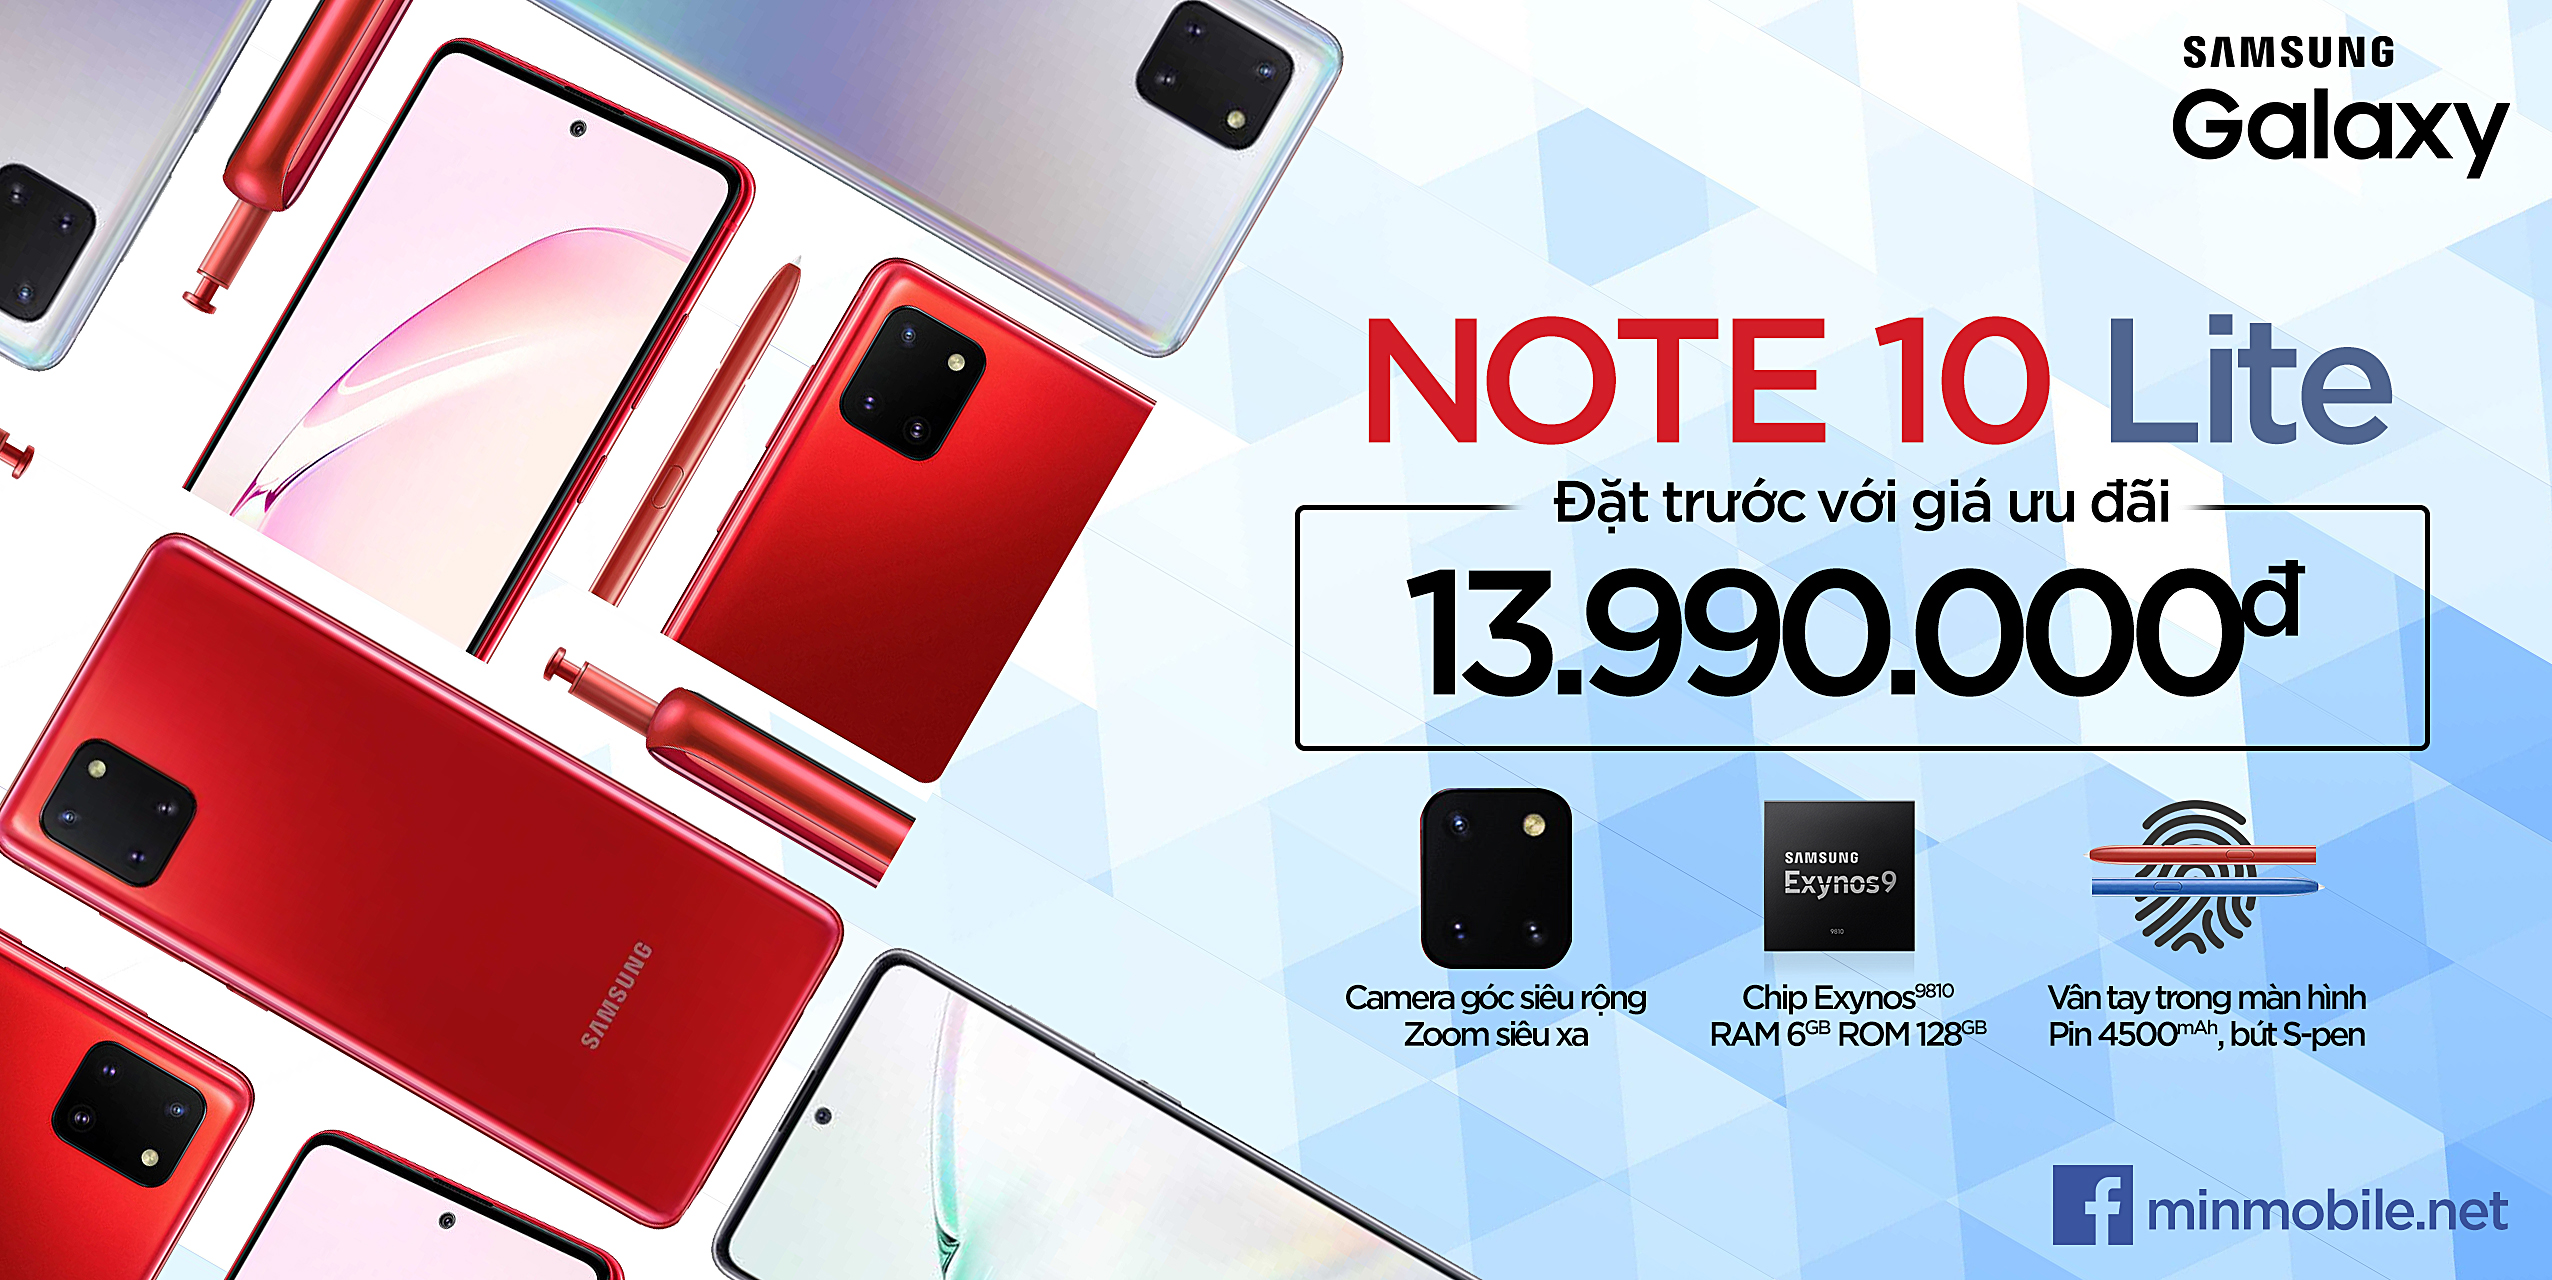 Đặt mua ngay Galaxy Note 10 Lite chính hãng giá cực tốt tại MinMobile